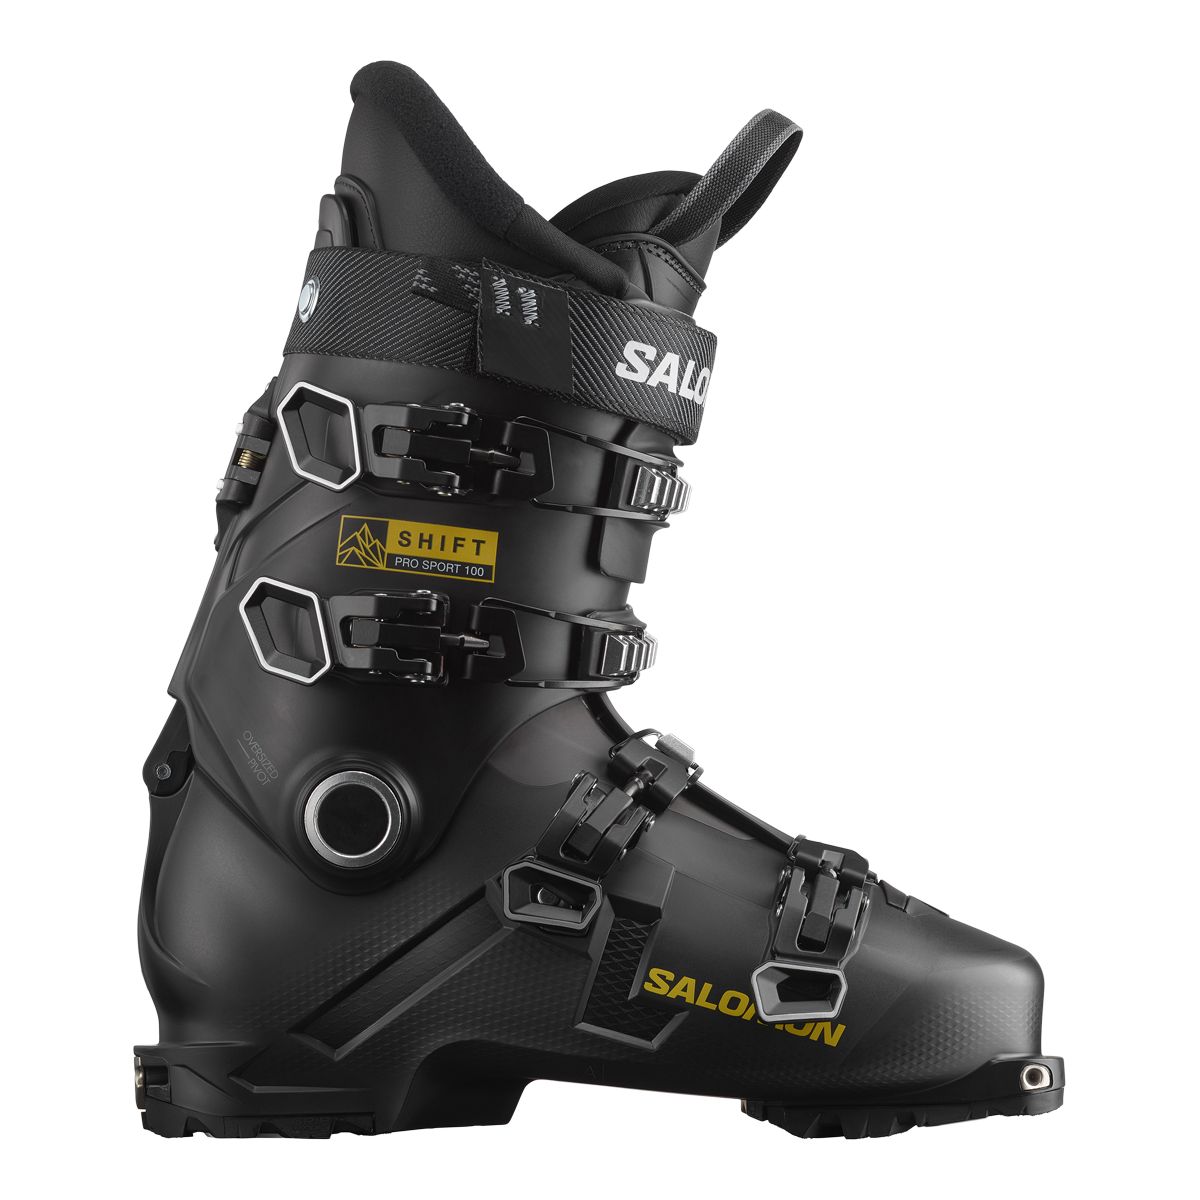 Image of Salomon Men’s Shift Pro Sport 100 Flex Ski Boots 2023